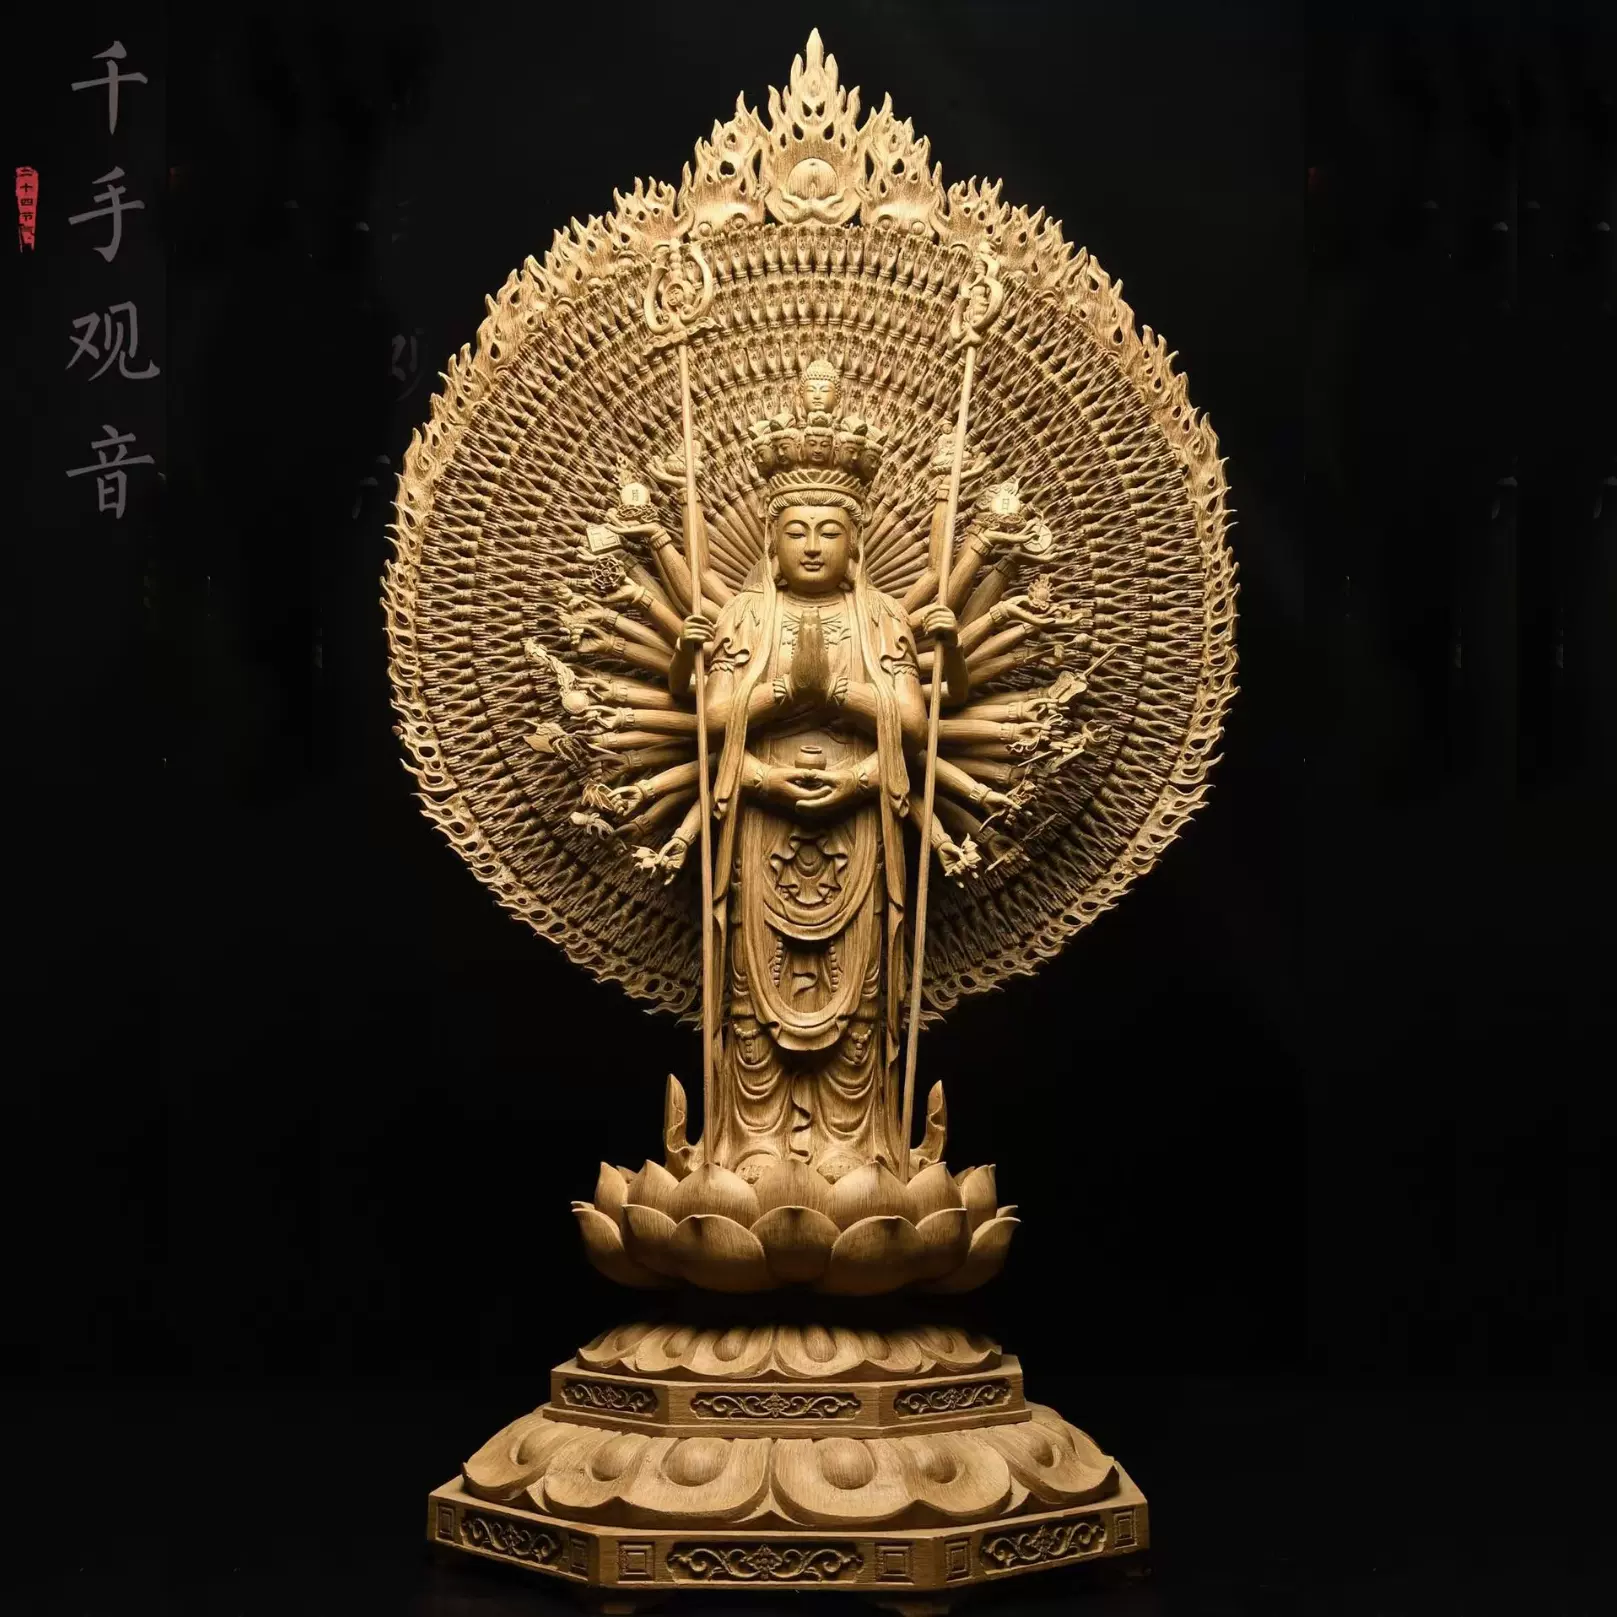 沉香檀香木人物摆件千手千眼观音菩萨佛像木雕根雕雕刻本命佛大型-Taobao